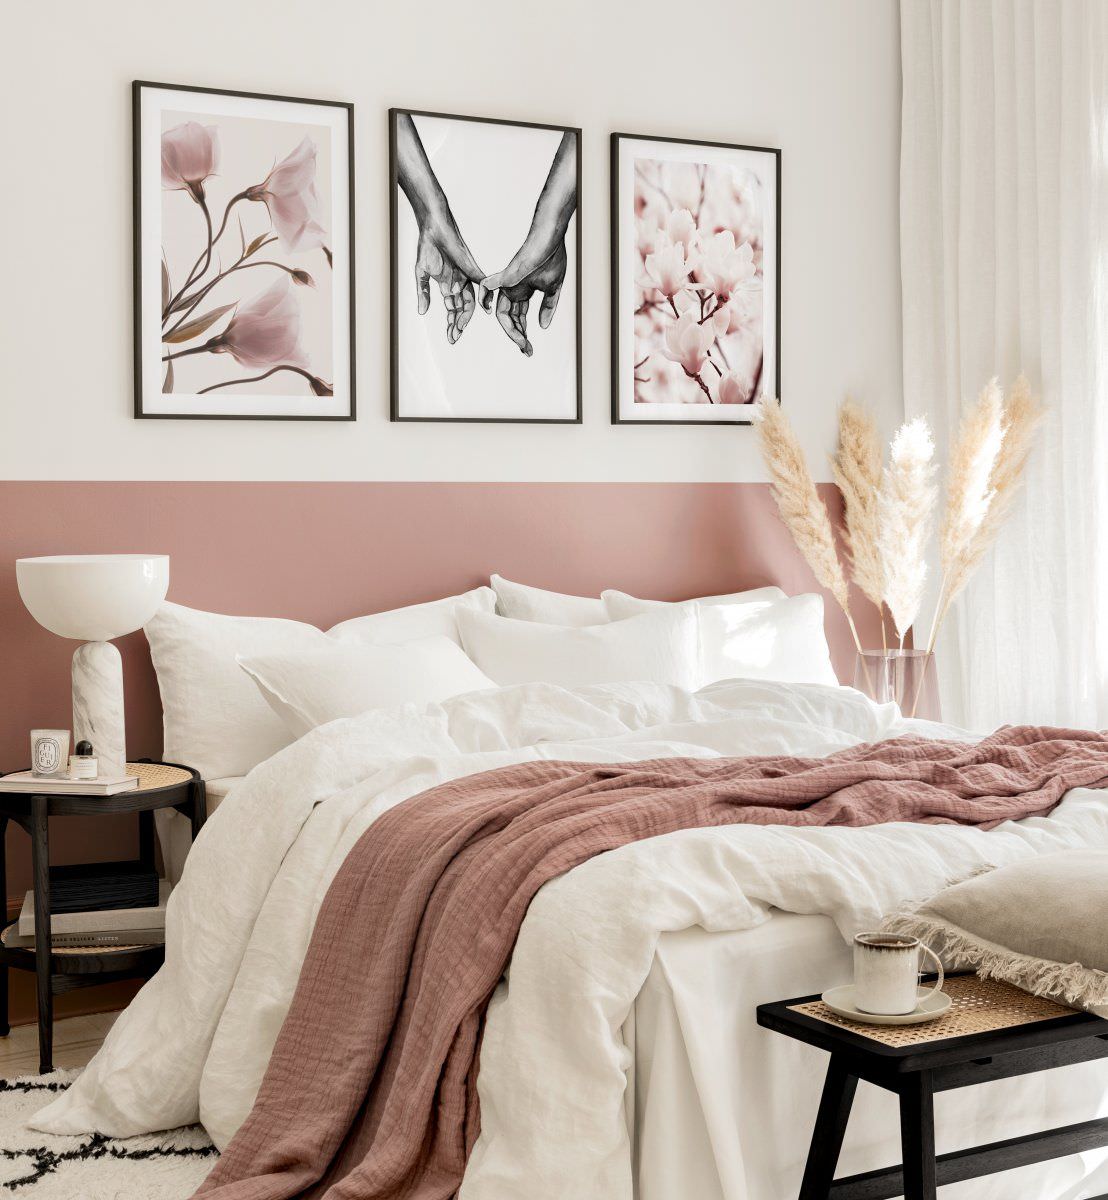 Thiết kế phòng ngủ 9m2 cho vợ chồng thêm ngọt ngào từ bộ ảnh canvas màu hồng